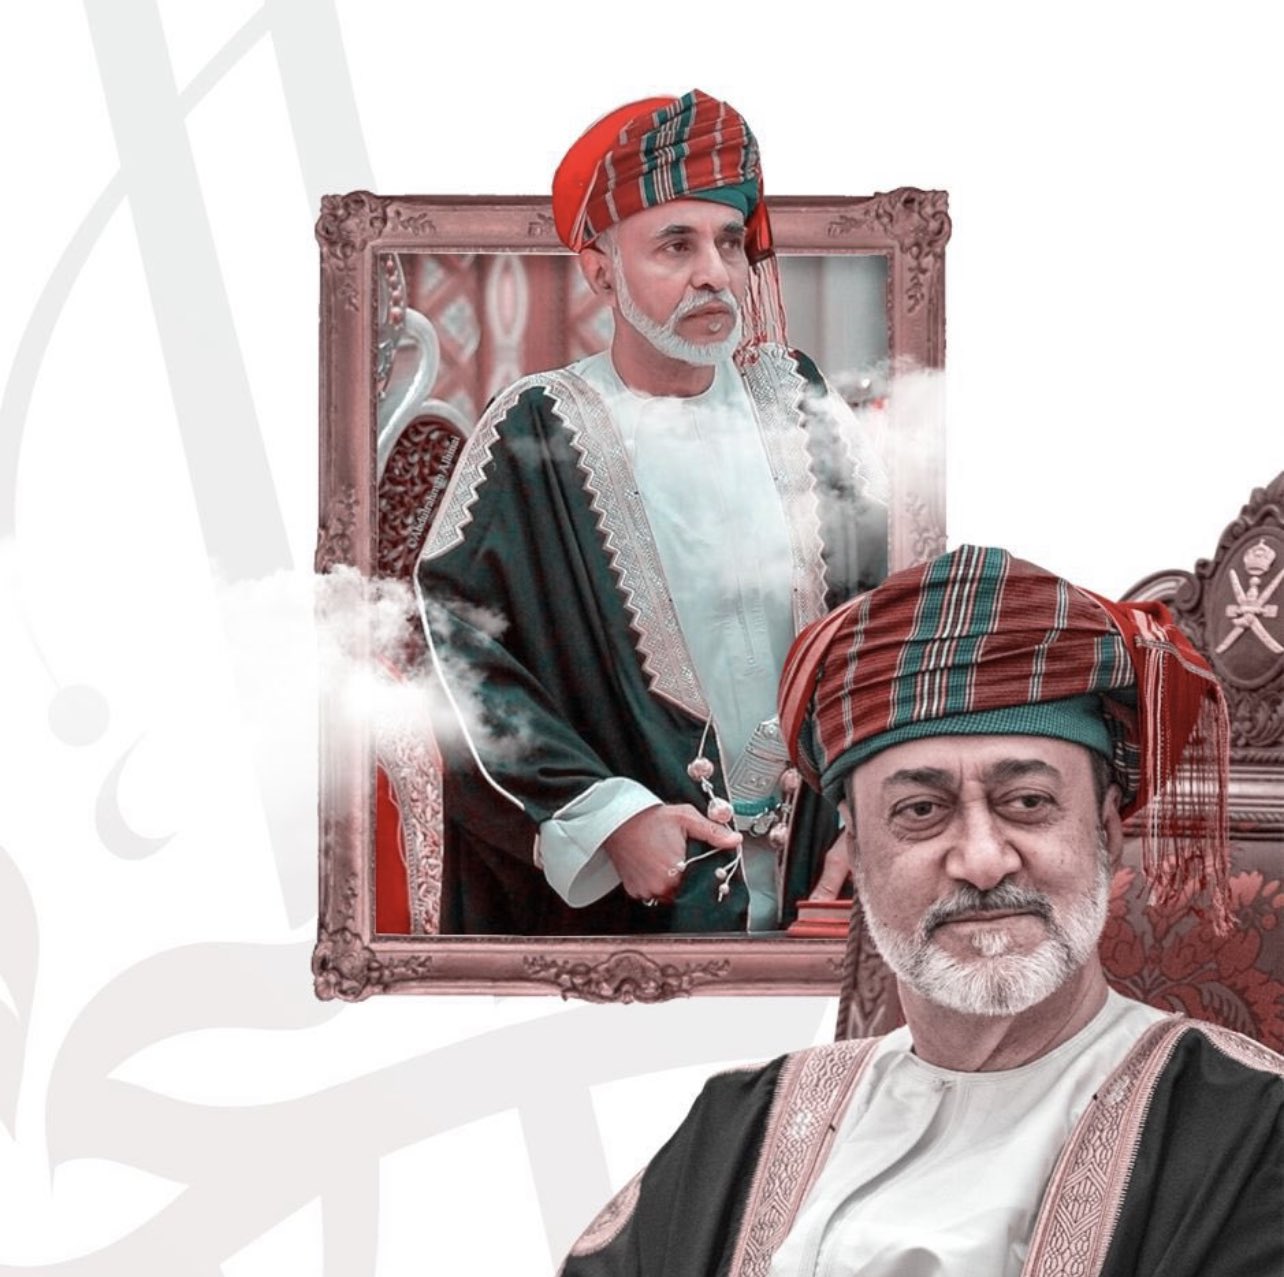 صحيفة فرنسية تقارن حال سلطنة عمان بين السلطان هيثم والراحل قابوس ما الذي تغيّر؟